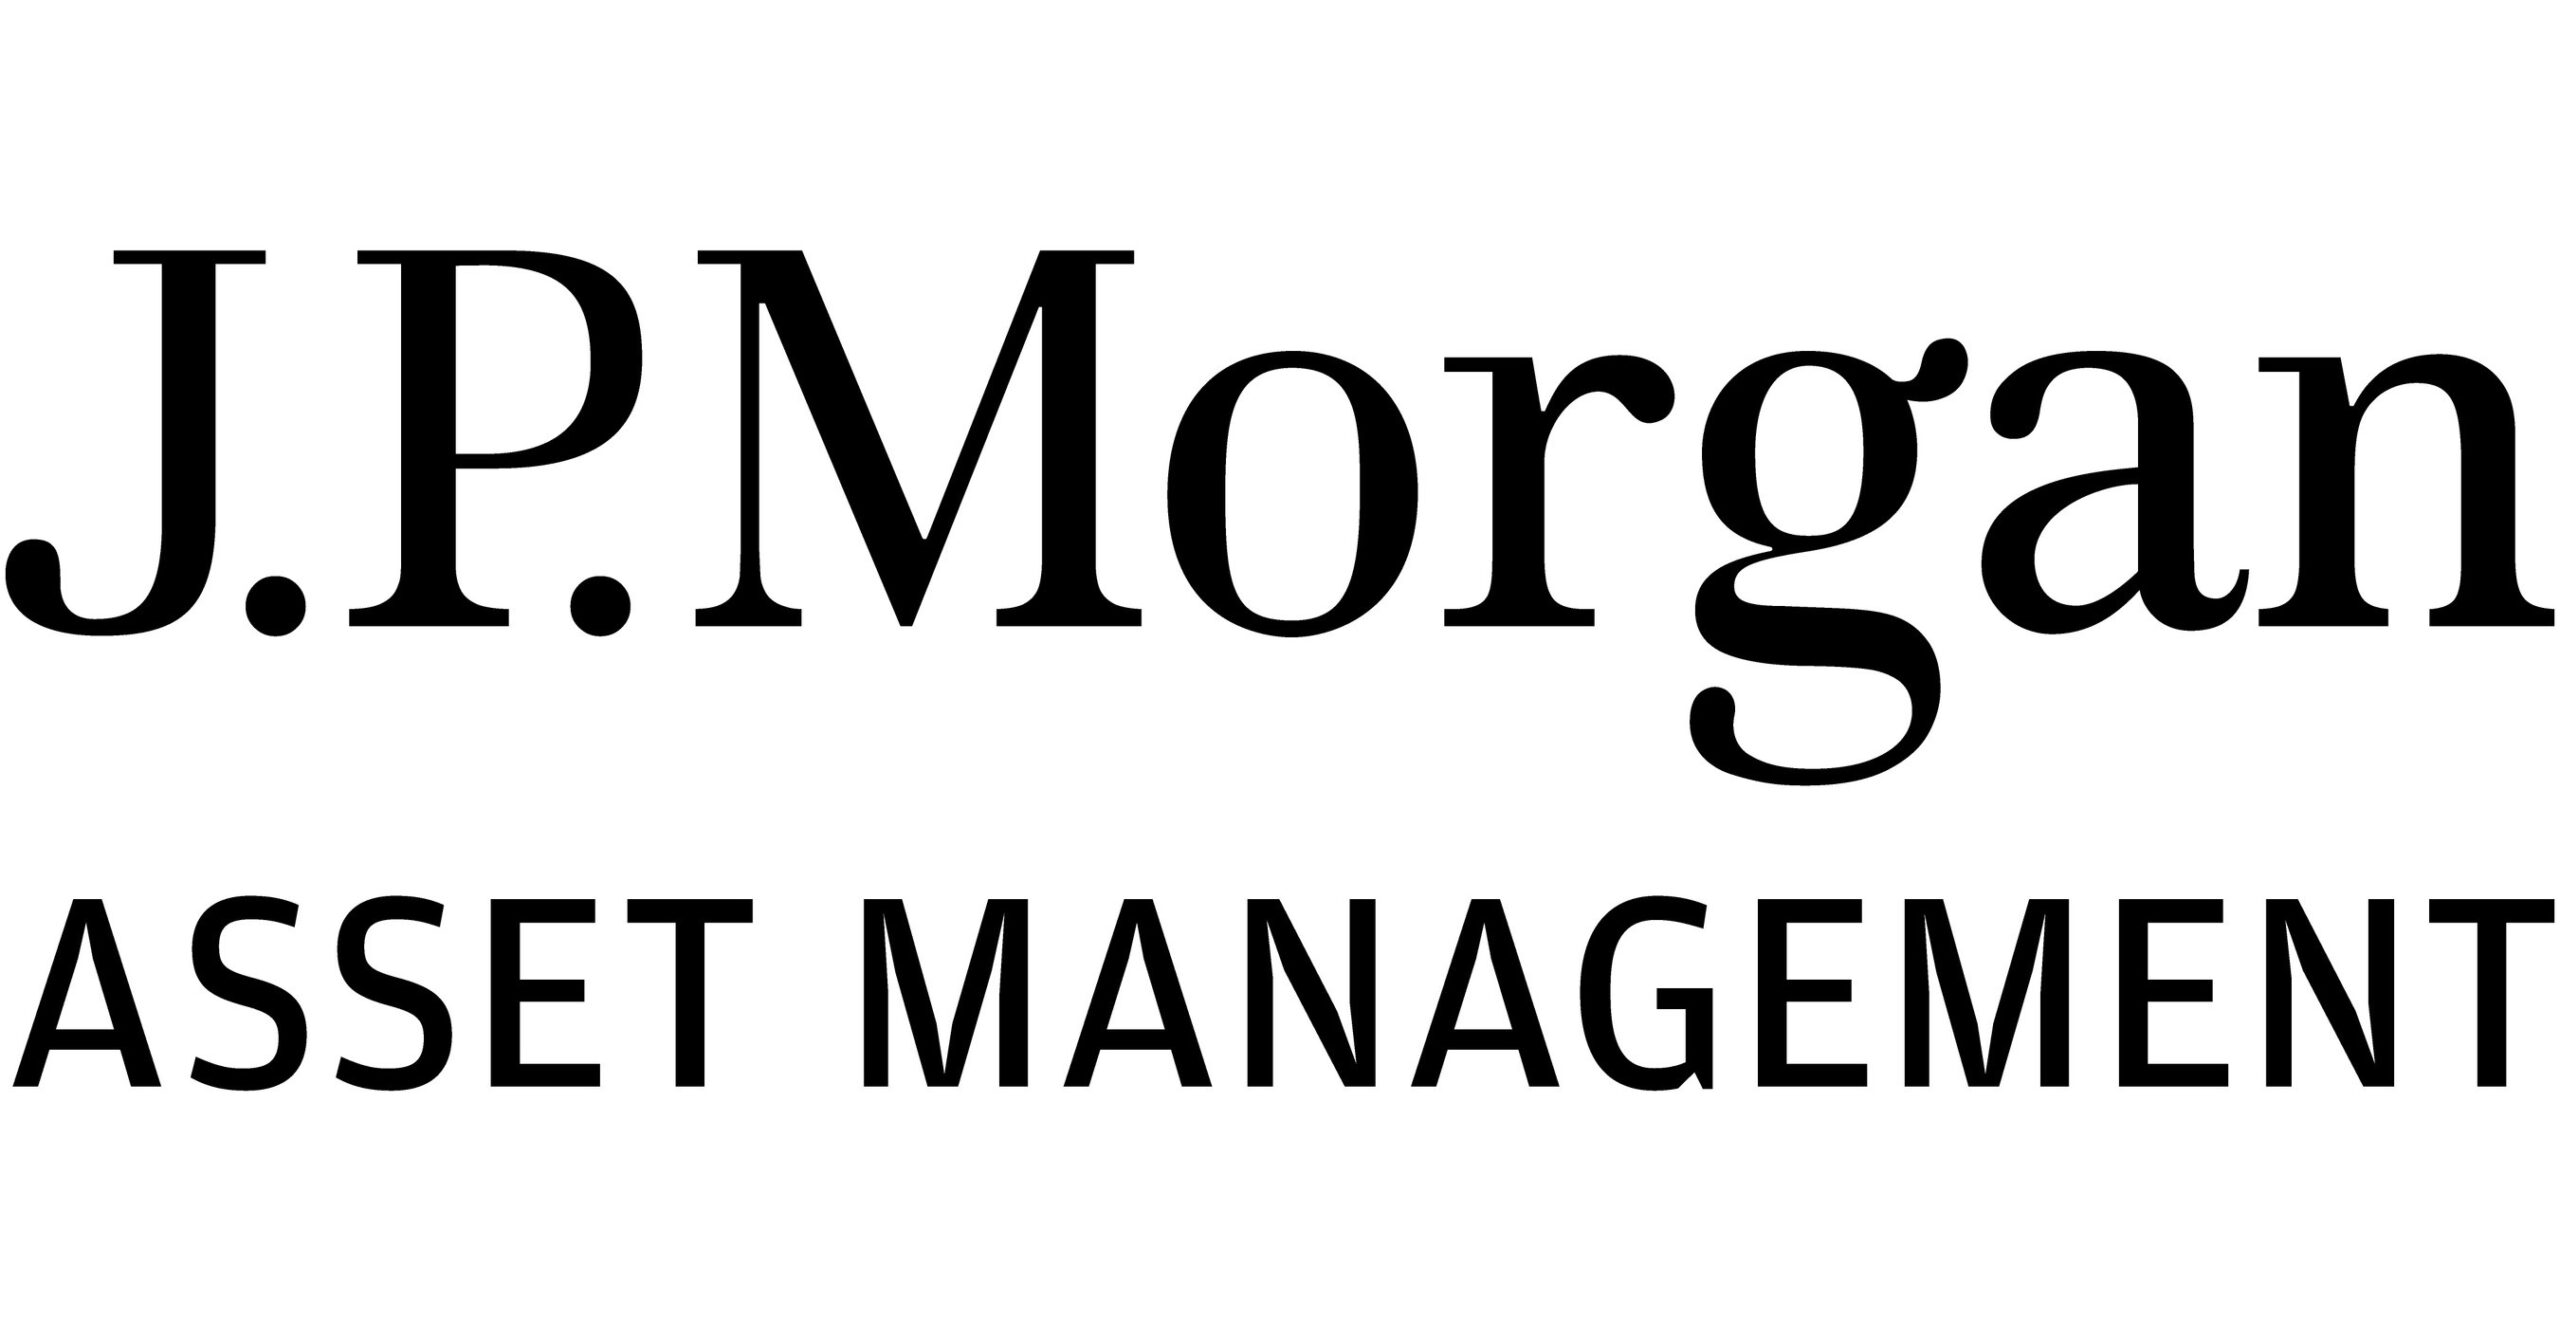 Fonderna kommer att få sina förvaltningsavgifter reducerade, visar avslöjanden. JPMorgan kommer att ge tre aktivt förvaltade ETF:er med sammanlagt 1,7 miljarder dollar i tillgångar under förvaltning en passiv makeover, visar anmälningar.